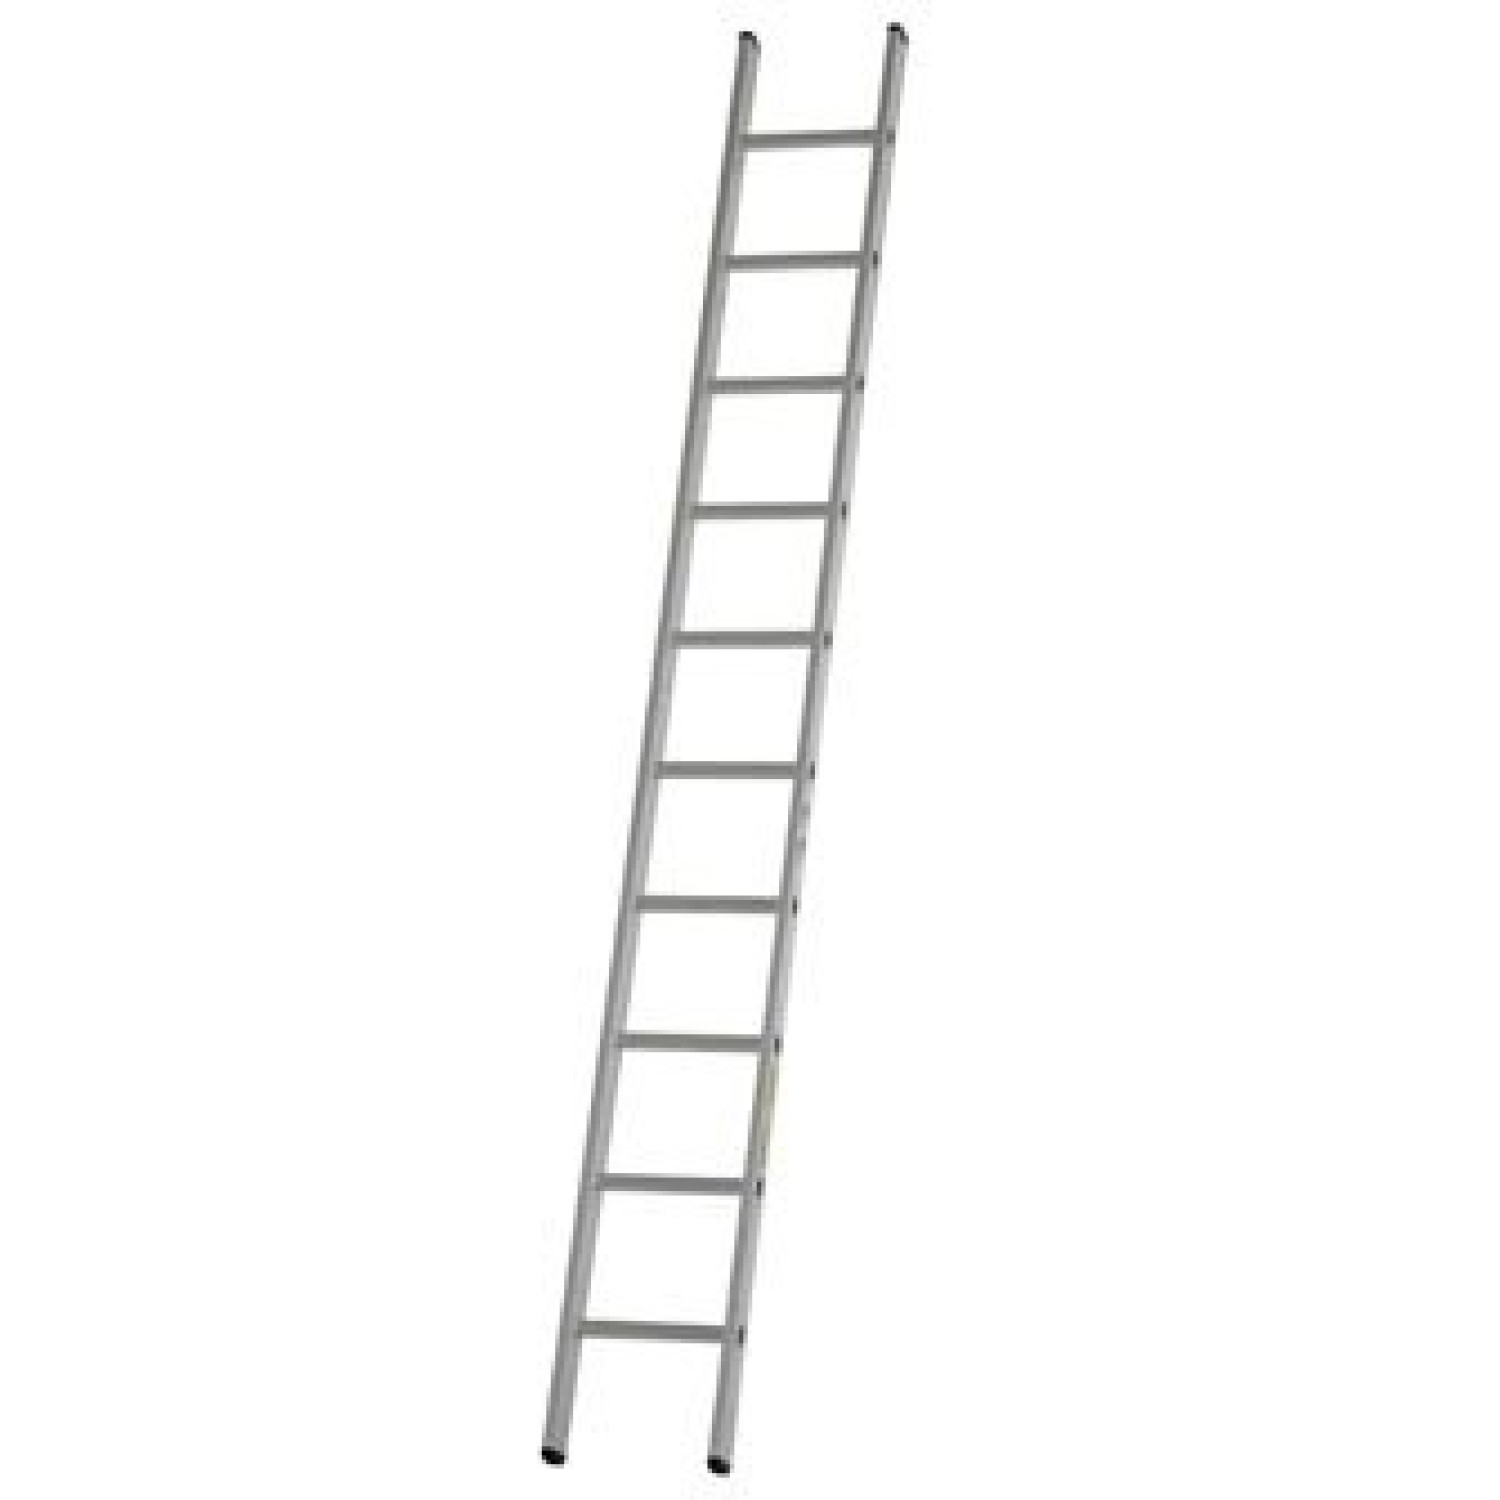 Dirks Enkele rechte ladder 4.7 meter gecoat